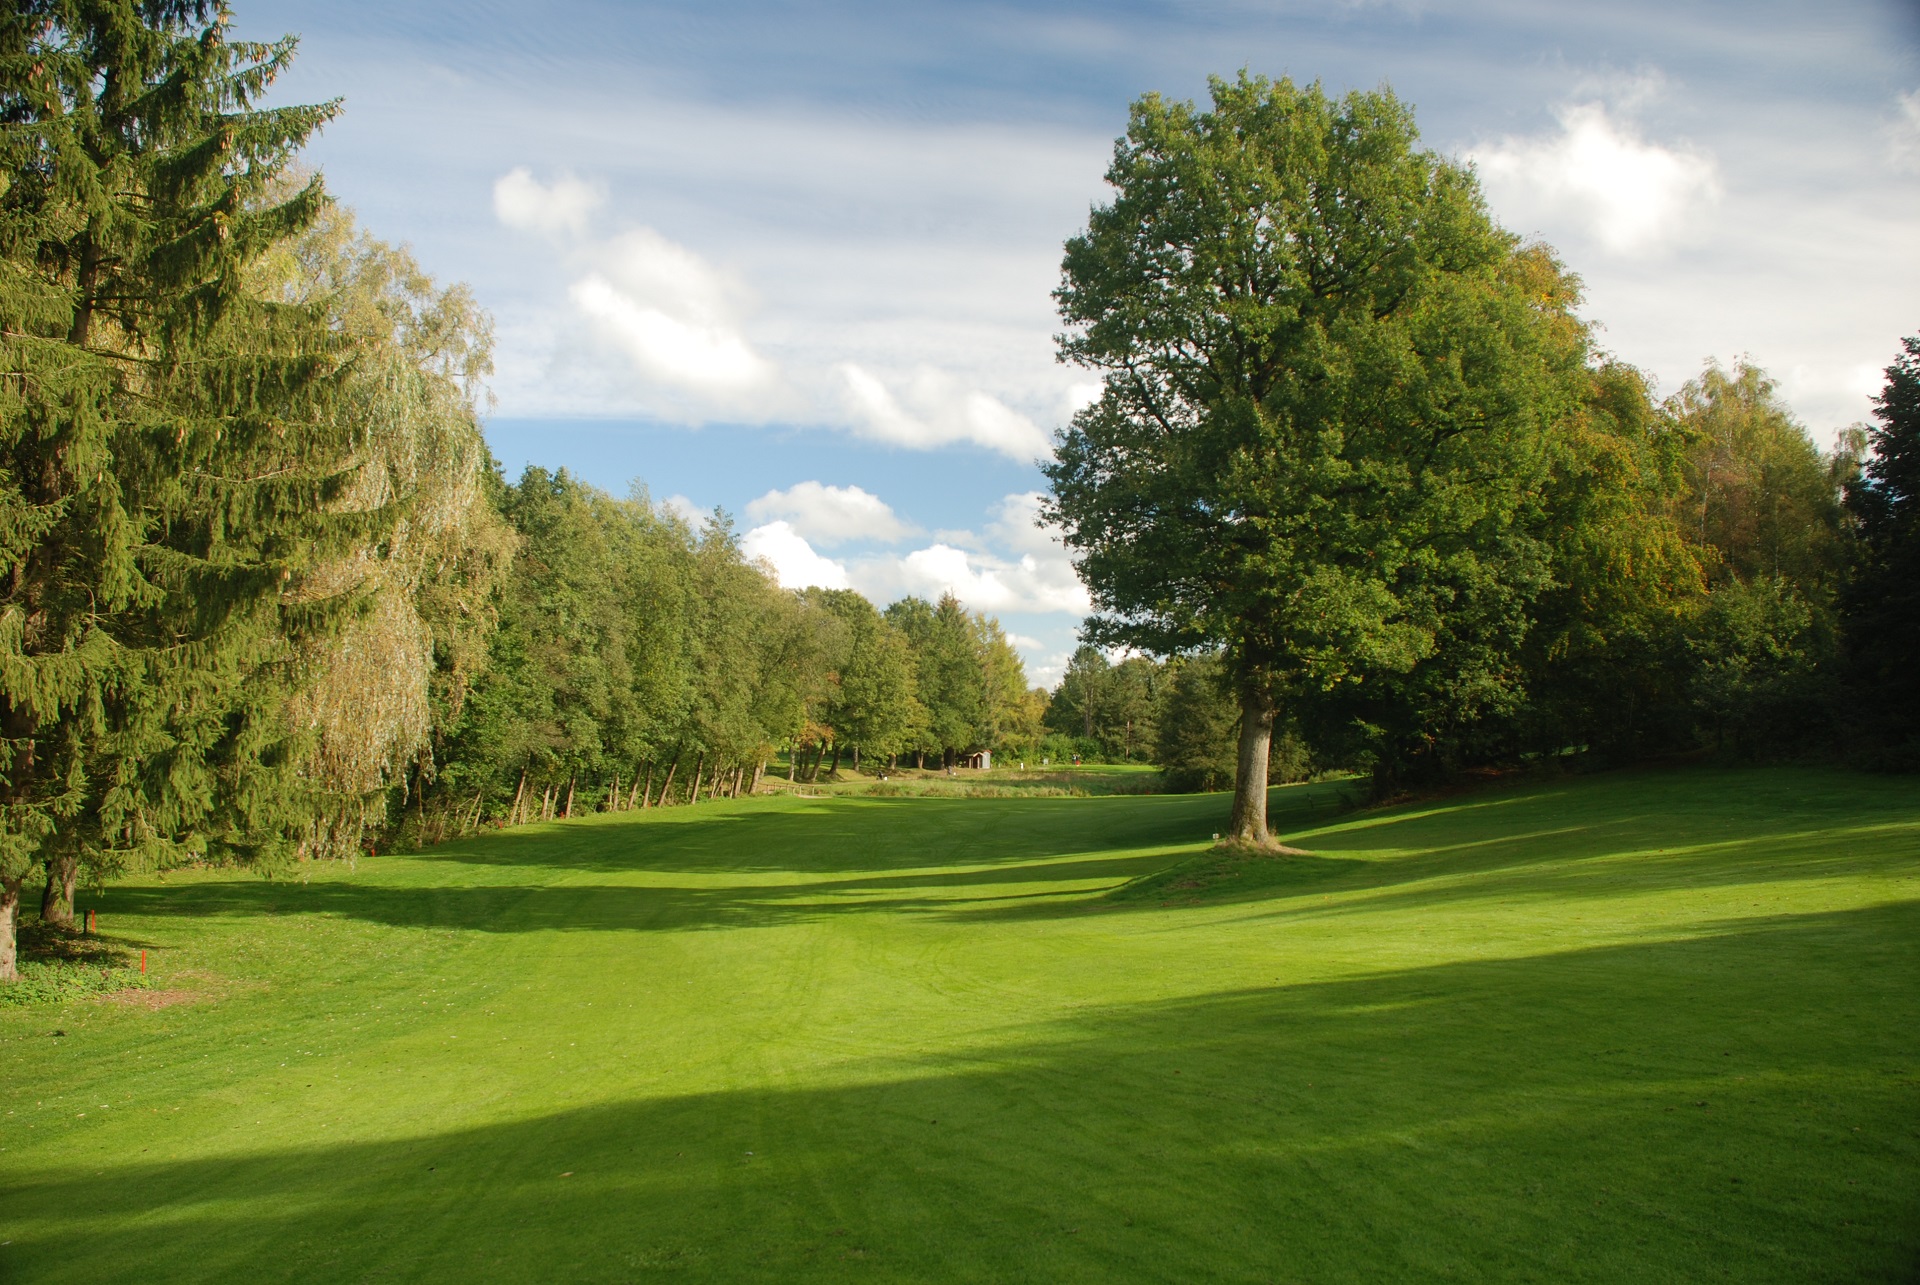 Mittelholsteinischer Golf-Club Aukrug